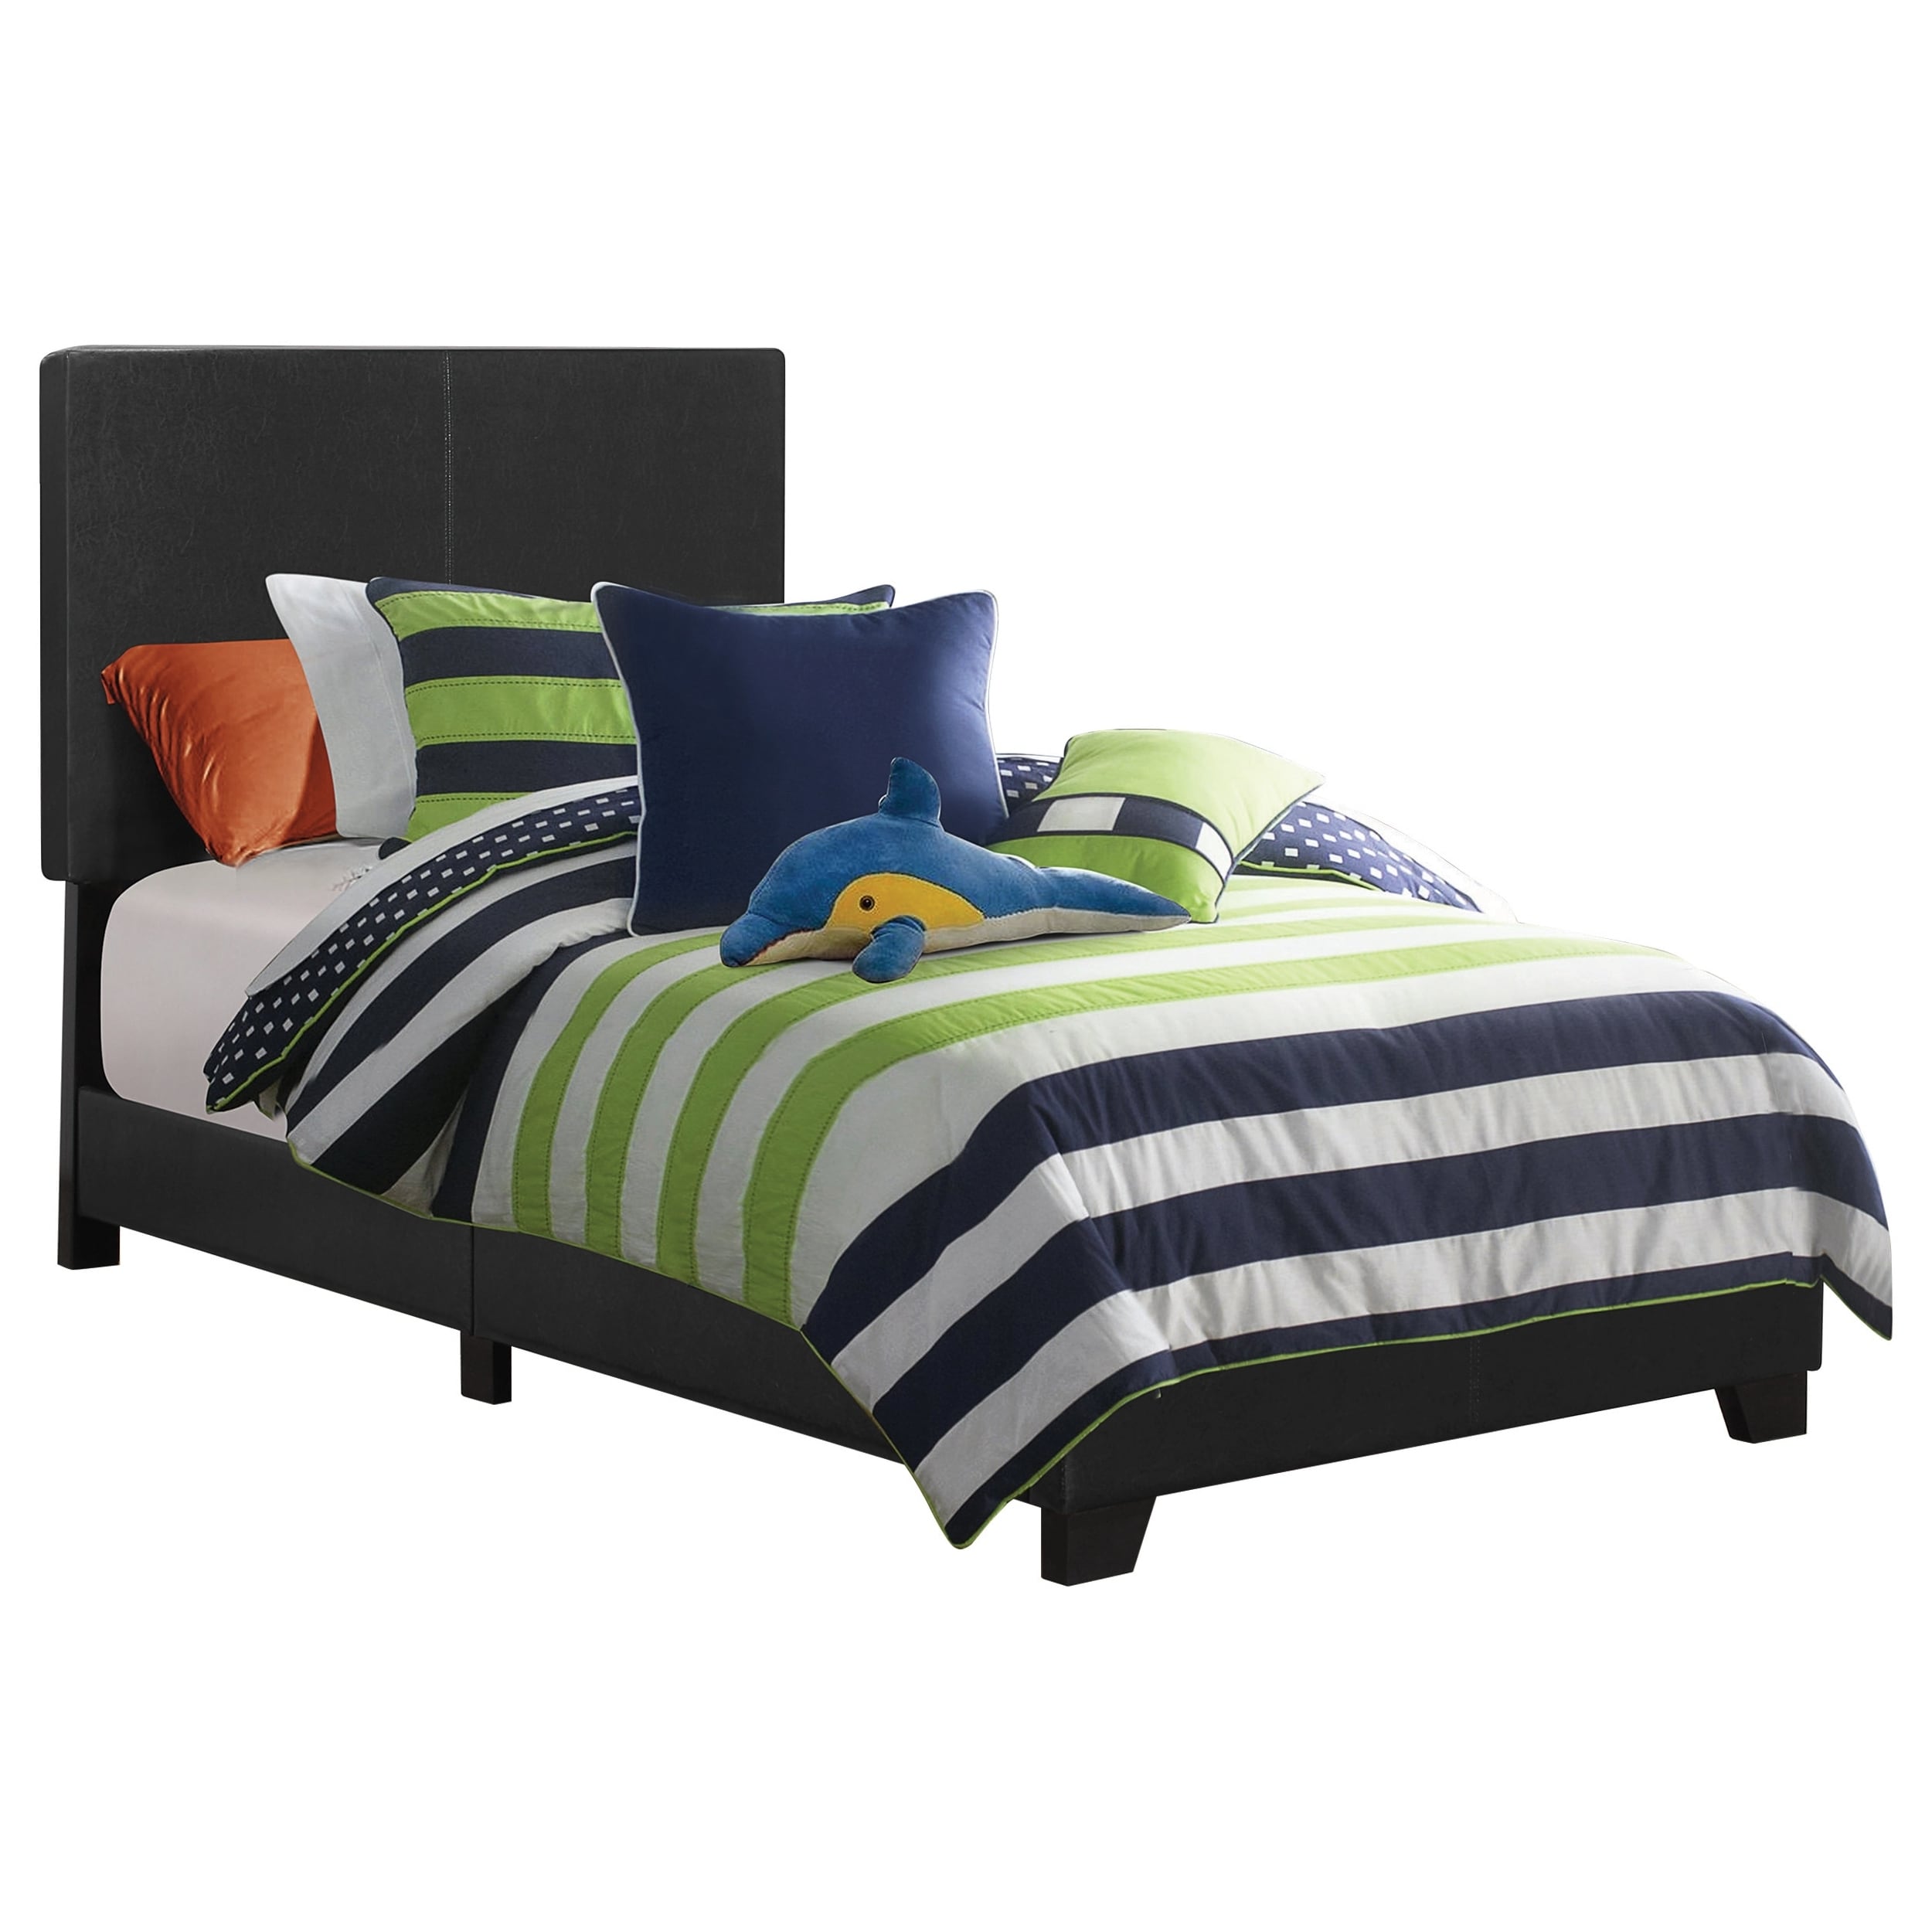 Modern Design Black Leatherette Upholstered Bed